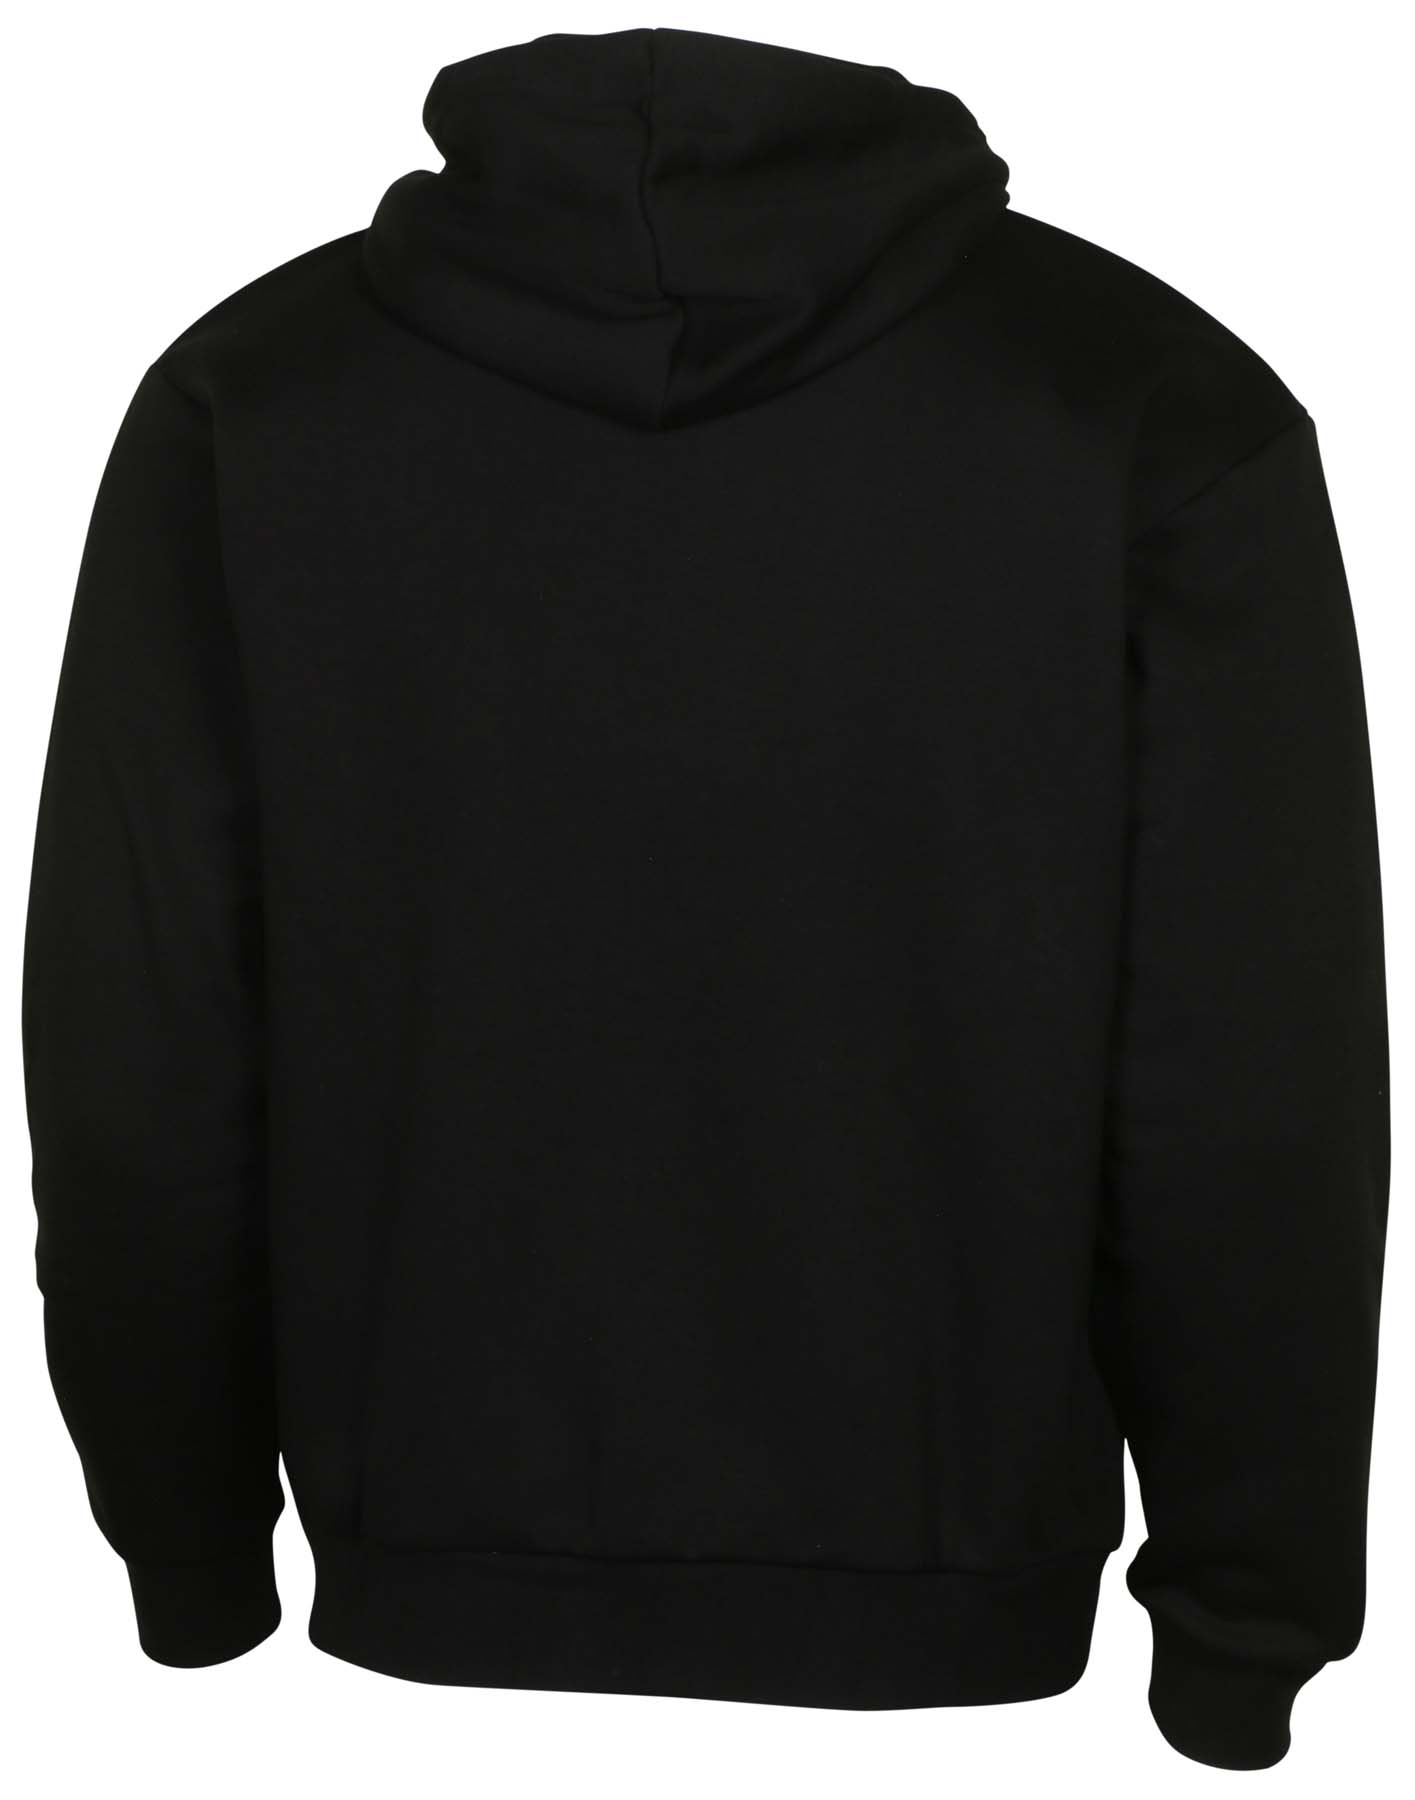 9 Crowns Men's Full Zip Lightweight Hooded Sweatshirt Fleece Hoodie | eBay